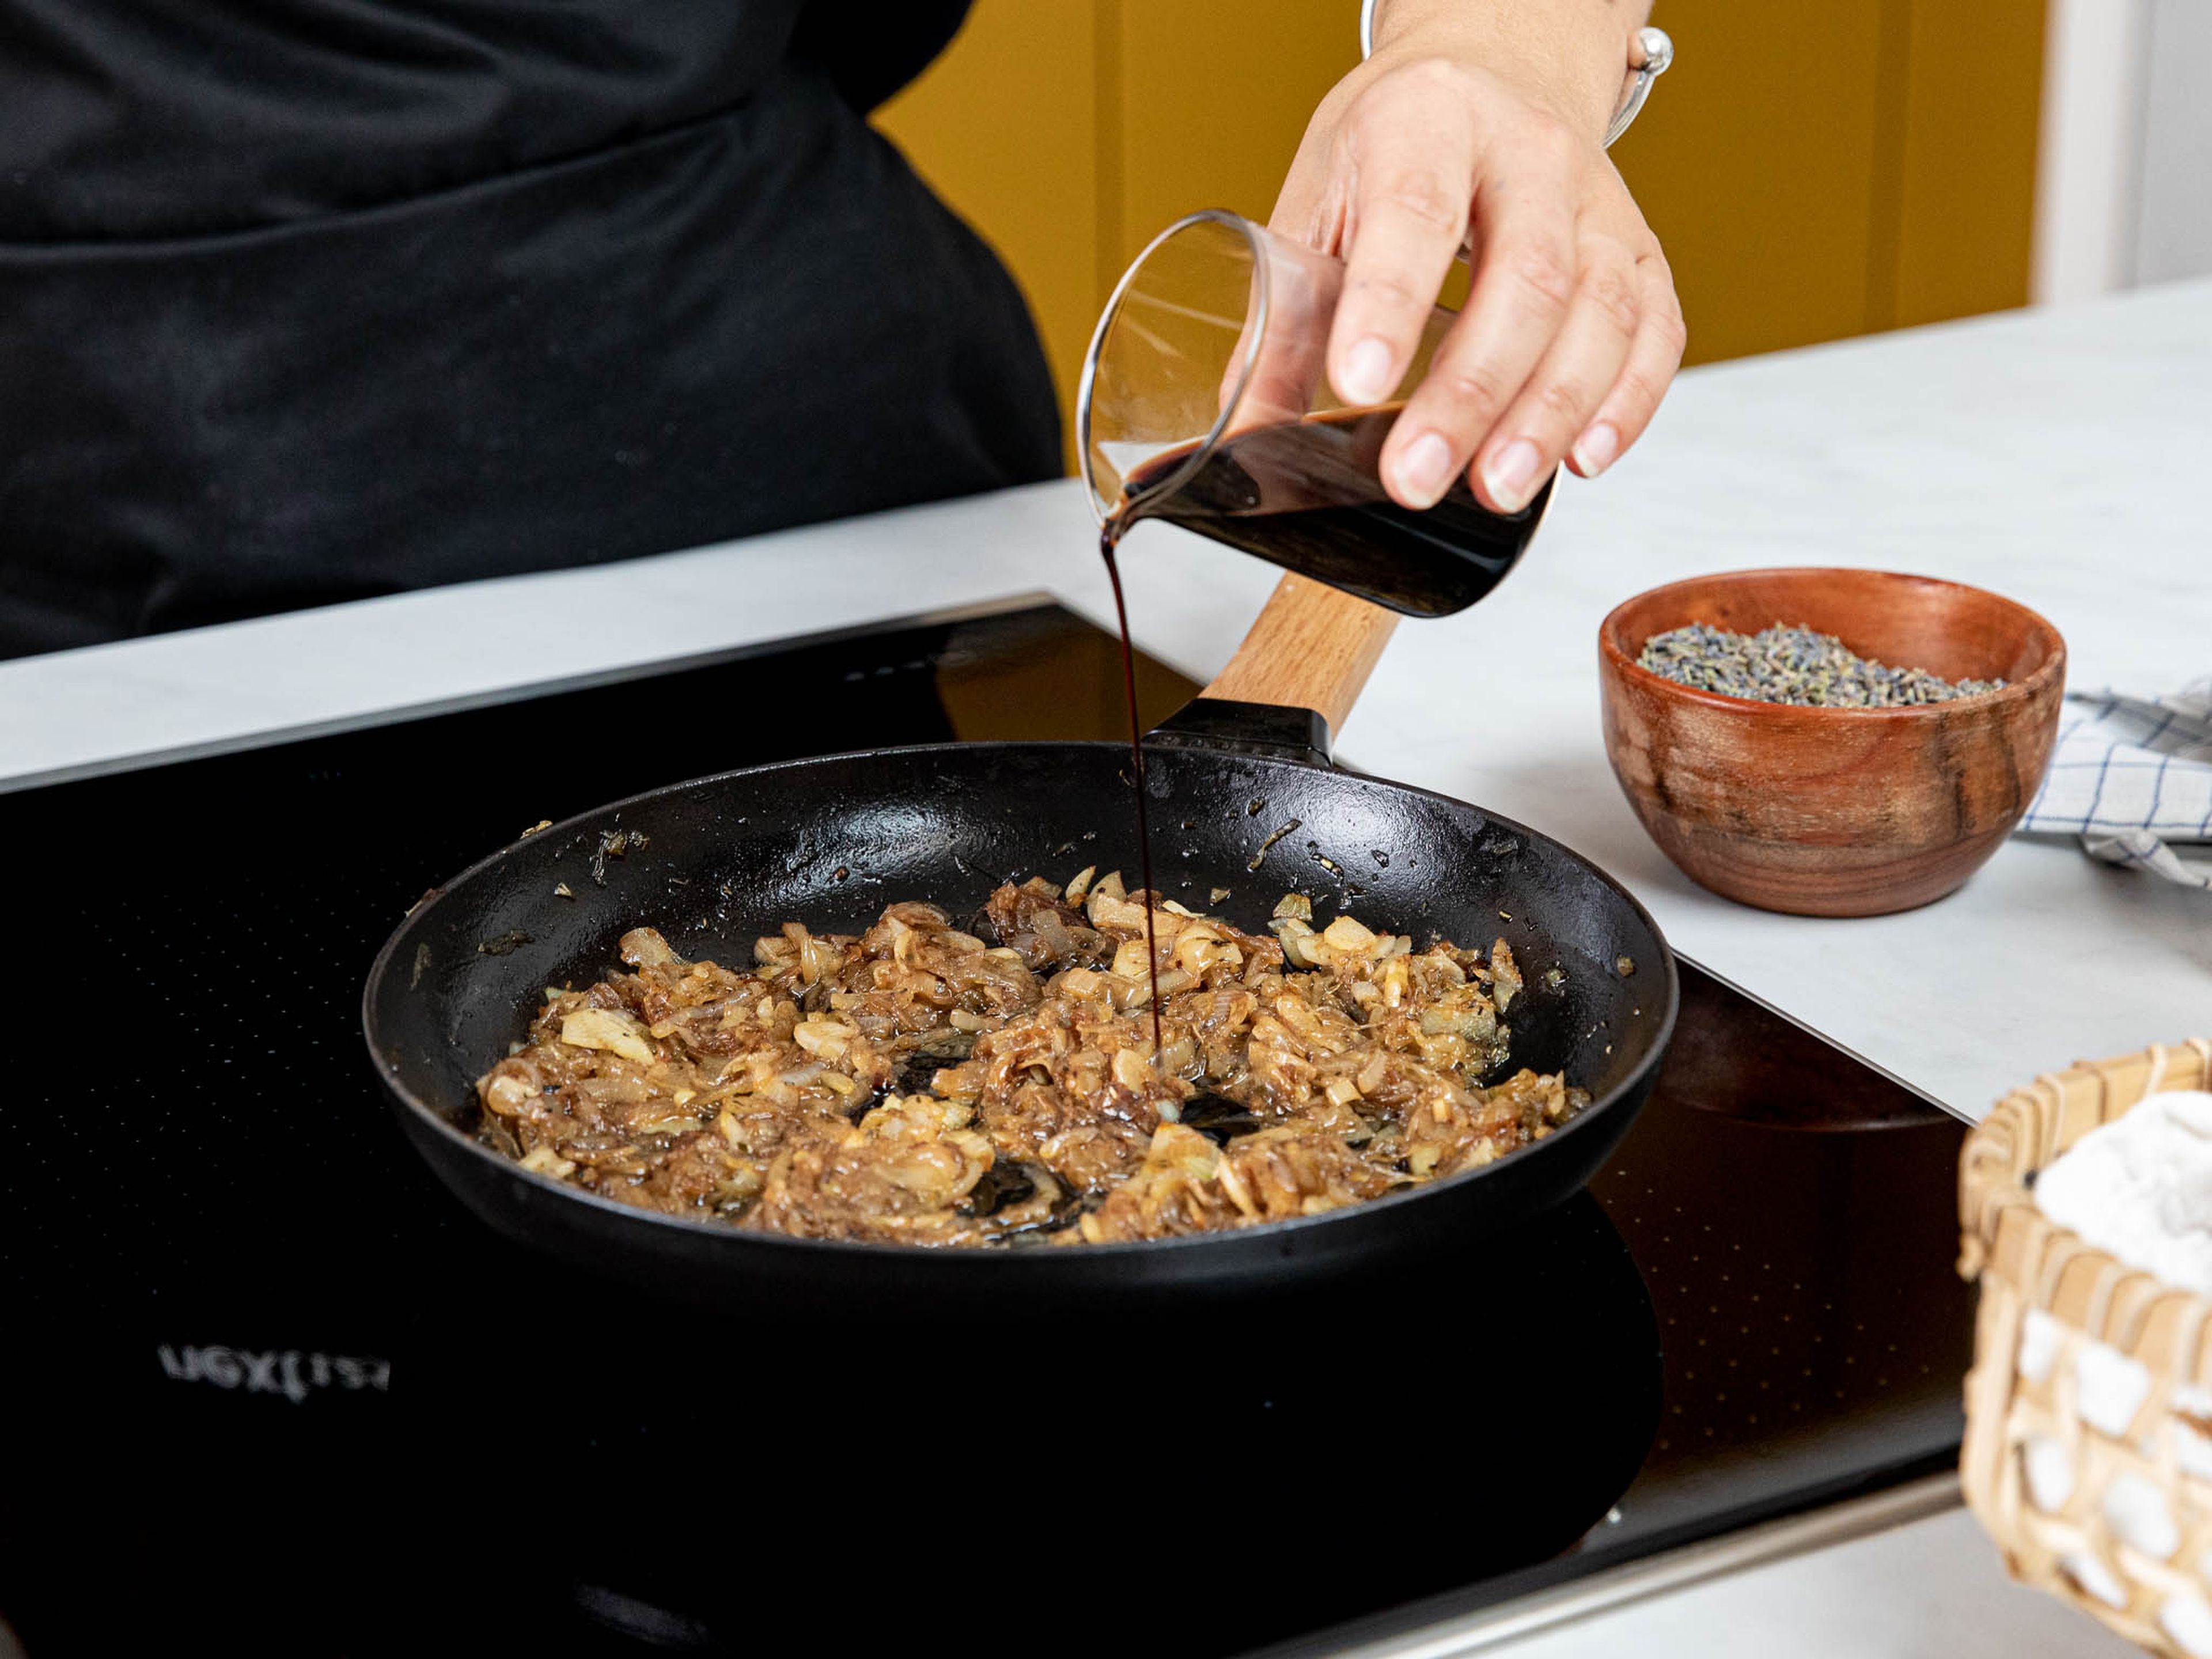 Zwiebeln und Knoblauchzehen in sehr dünne Scheiben schneiden. Eine großzügige Menge Olivenöl in einer Pfanne über mittlerer Hitze erwärmen und die Zwiebeln darin sanft anschwitzen, bis sie glasig sind. Knoblauch dazugeben und weiter anschwitzen, bis die Zwiebeln weich und karamellisiert sind. Balsamicoessig dazugeben und mit Salz und Kräutern der Provence würzen. Anschließend beiseitestellen.